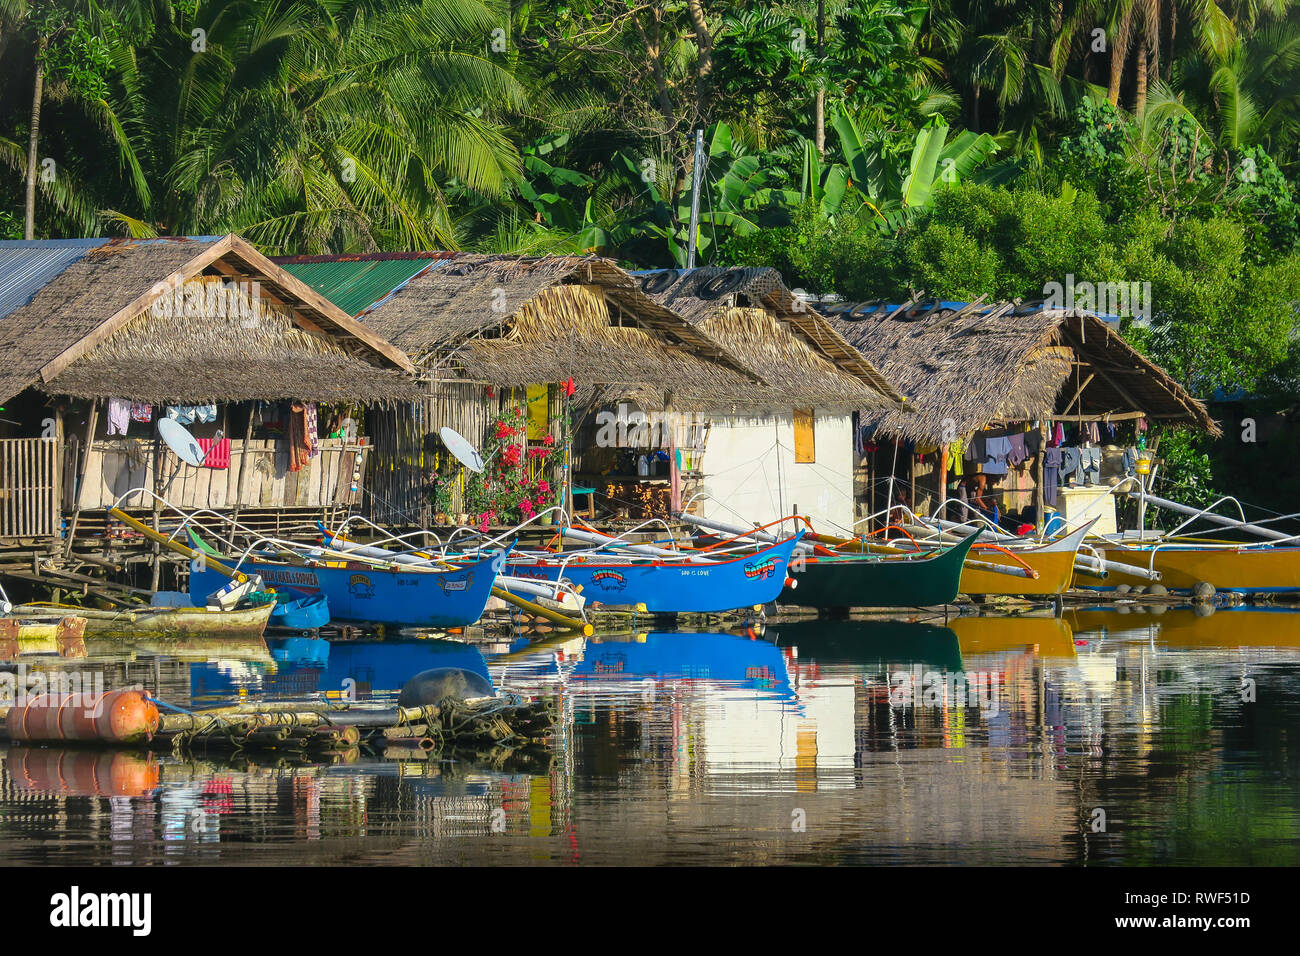 Bunte Boote aus Holz geparkt bei einheimischen Häusern im Rustikalen philippinische Dorf - Siargao, Philippinen Stockfoto